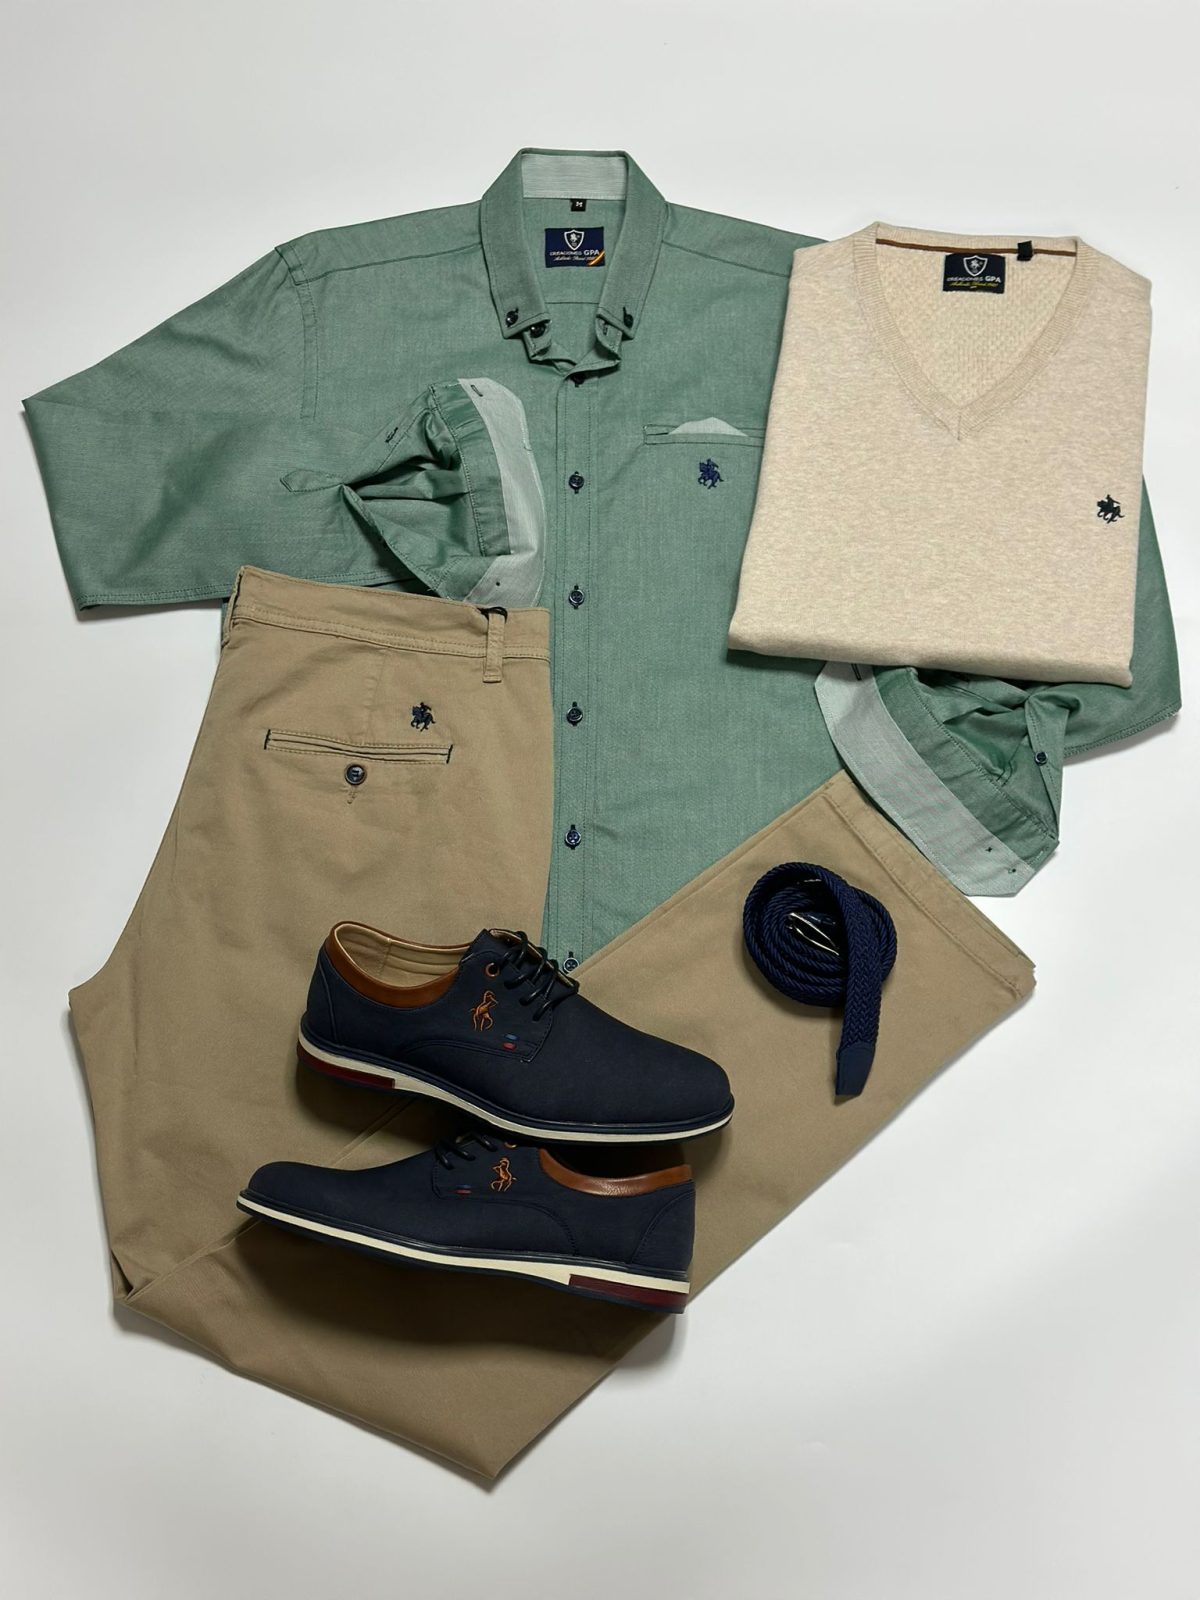 Set 4 - Camisa Oxford Verde, Jersey Crema, Pantalón Chino Beige y Zapato Marino hombre